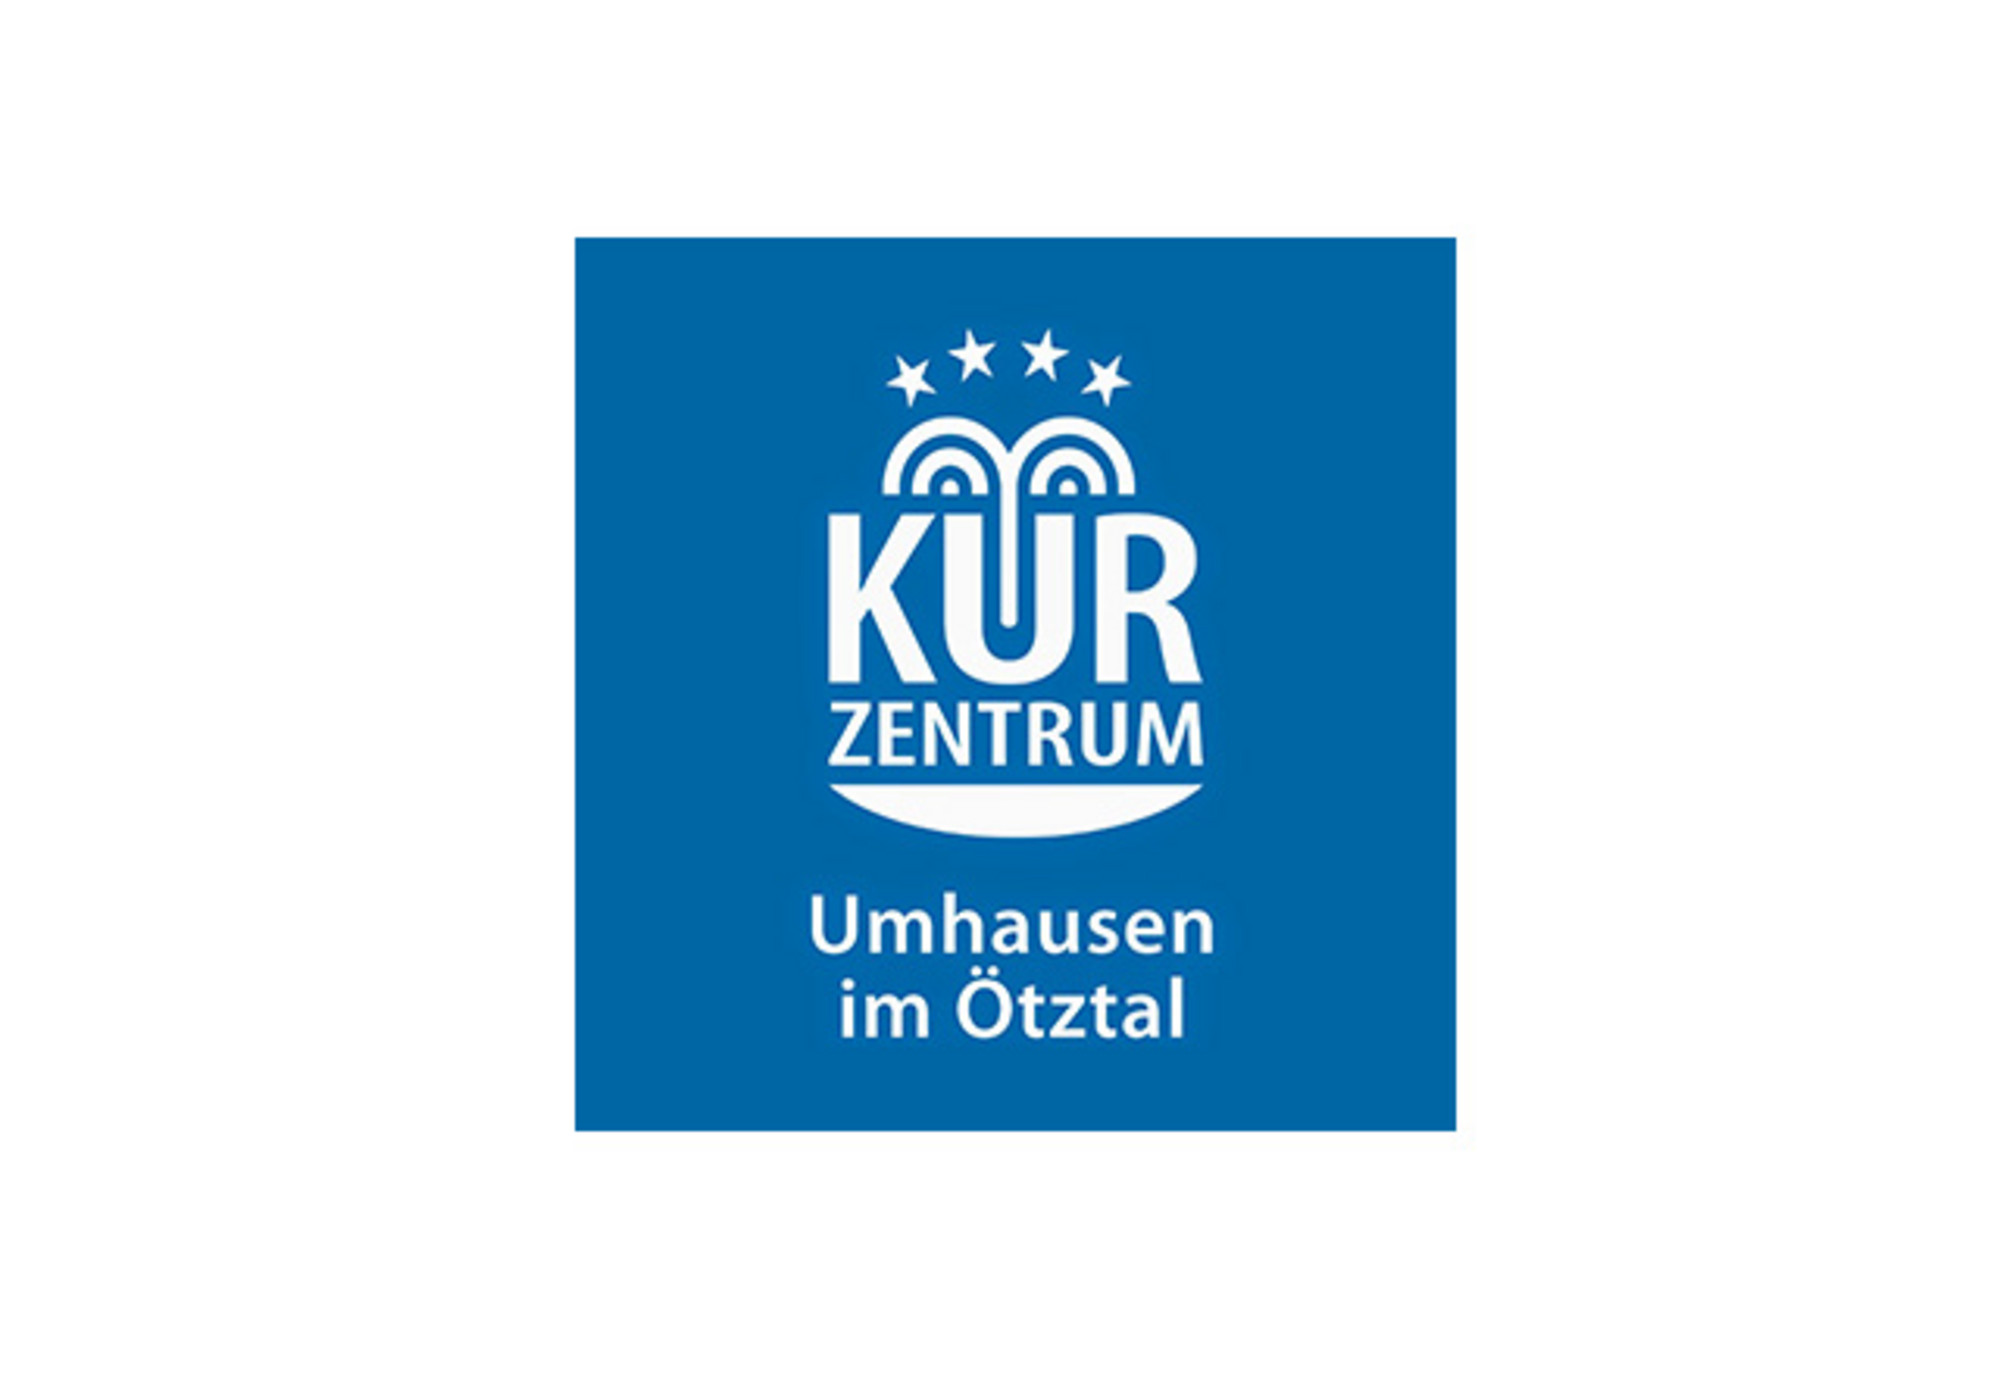 Kurtzentrum Umhausen